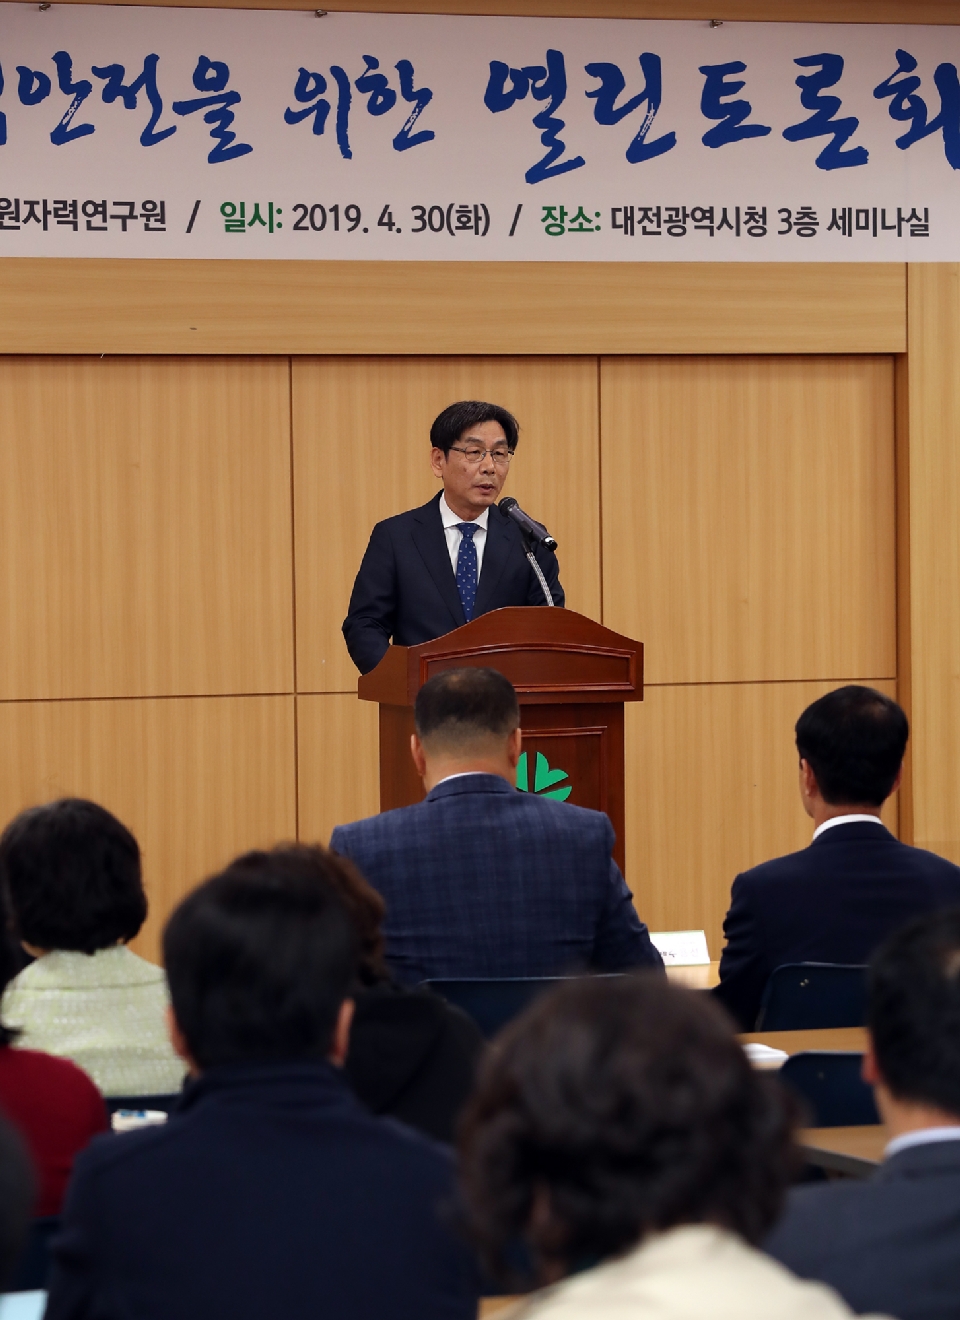 엄재식 원자력안전위원회 위원장은 30일 대전시청에서 진행된 대전 원자력안전을 위한 열린 토론회에 참석해 축사하고 있다.